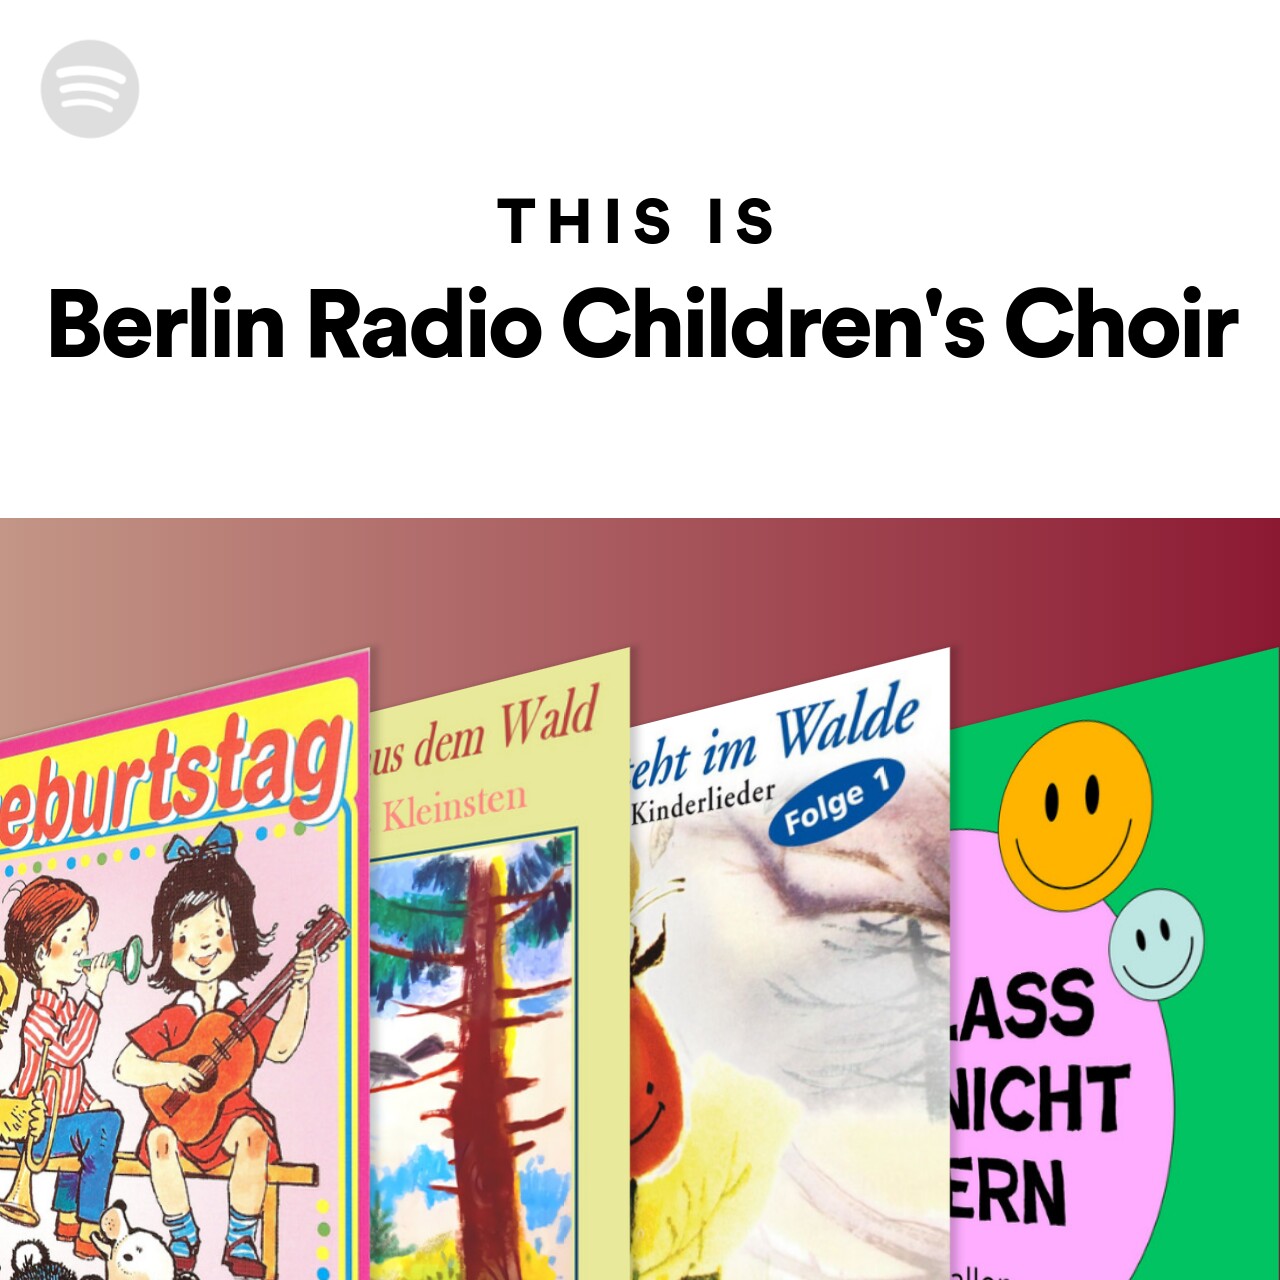 This Is Berlin Radio Children's Choir